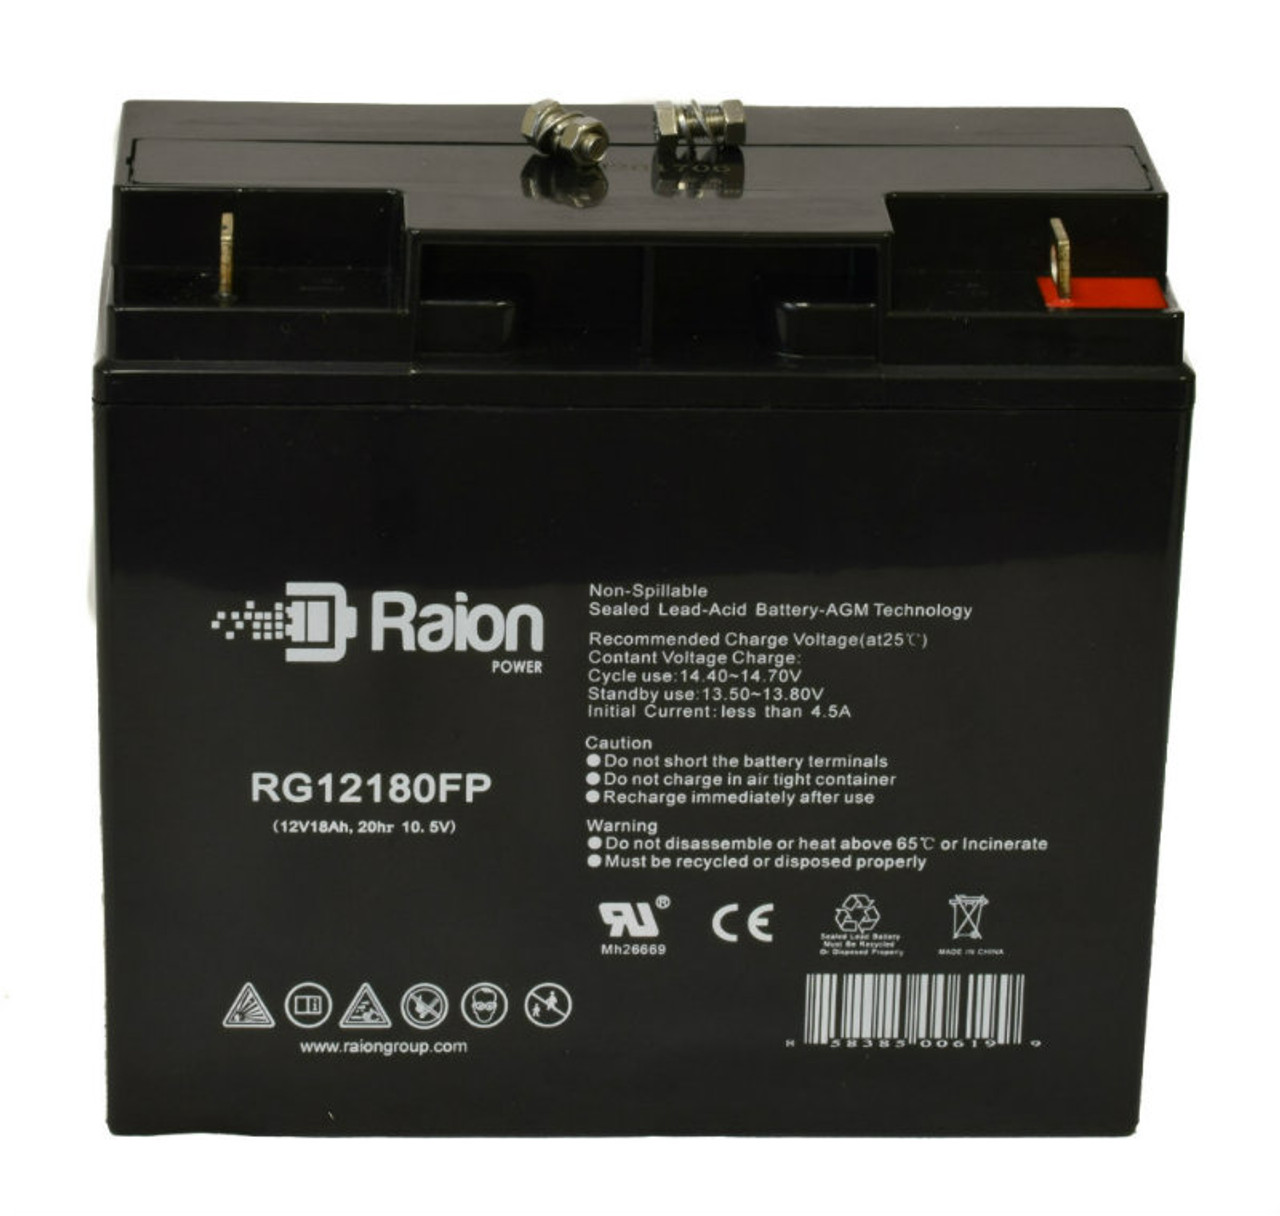 Raion Power RG12180FP 12V 18Ah Lead Acid Battery for Light Alarms CE15CK